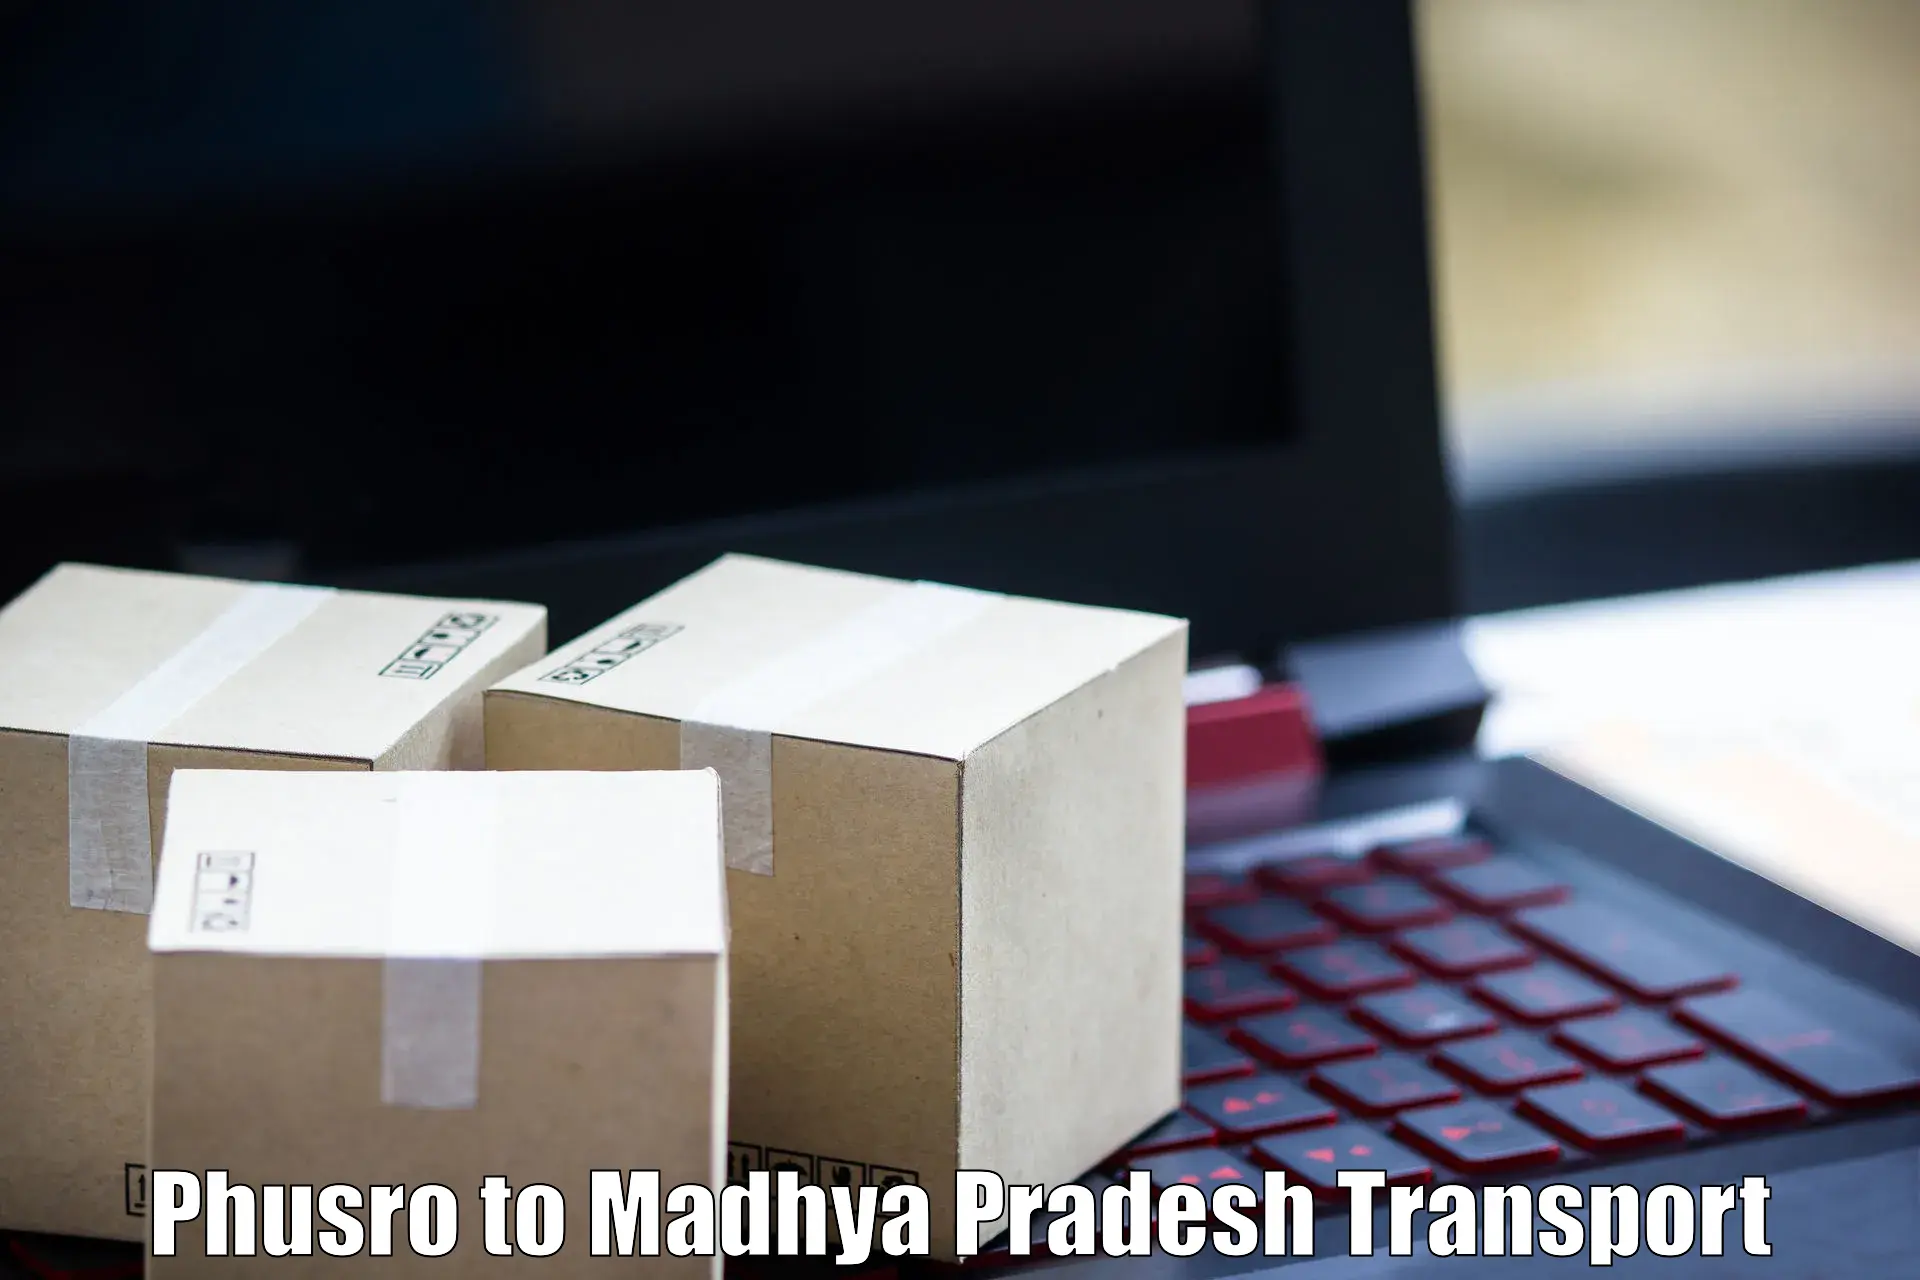 Container transport service Phusro to Madhya Pradesh